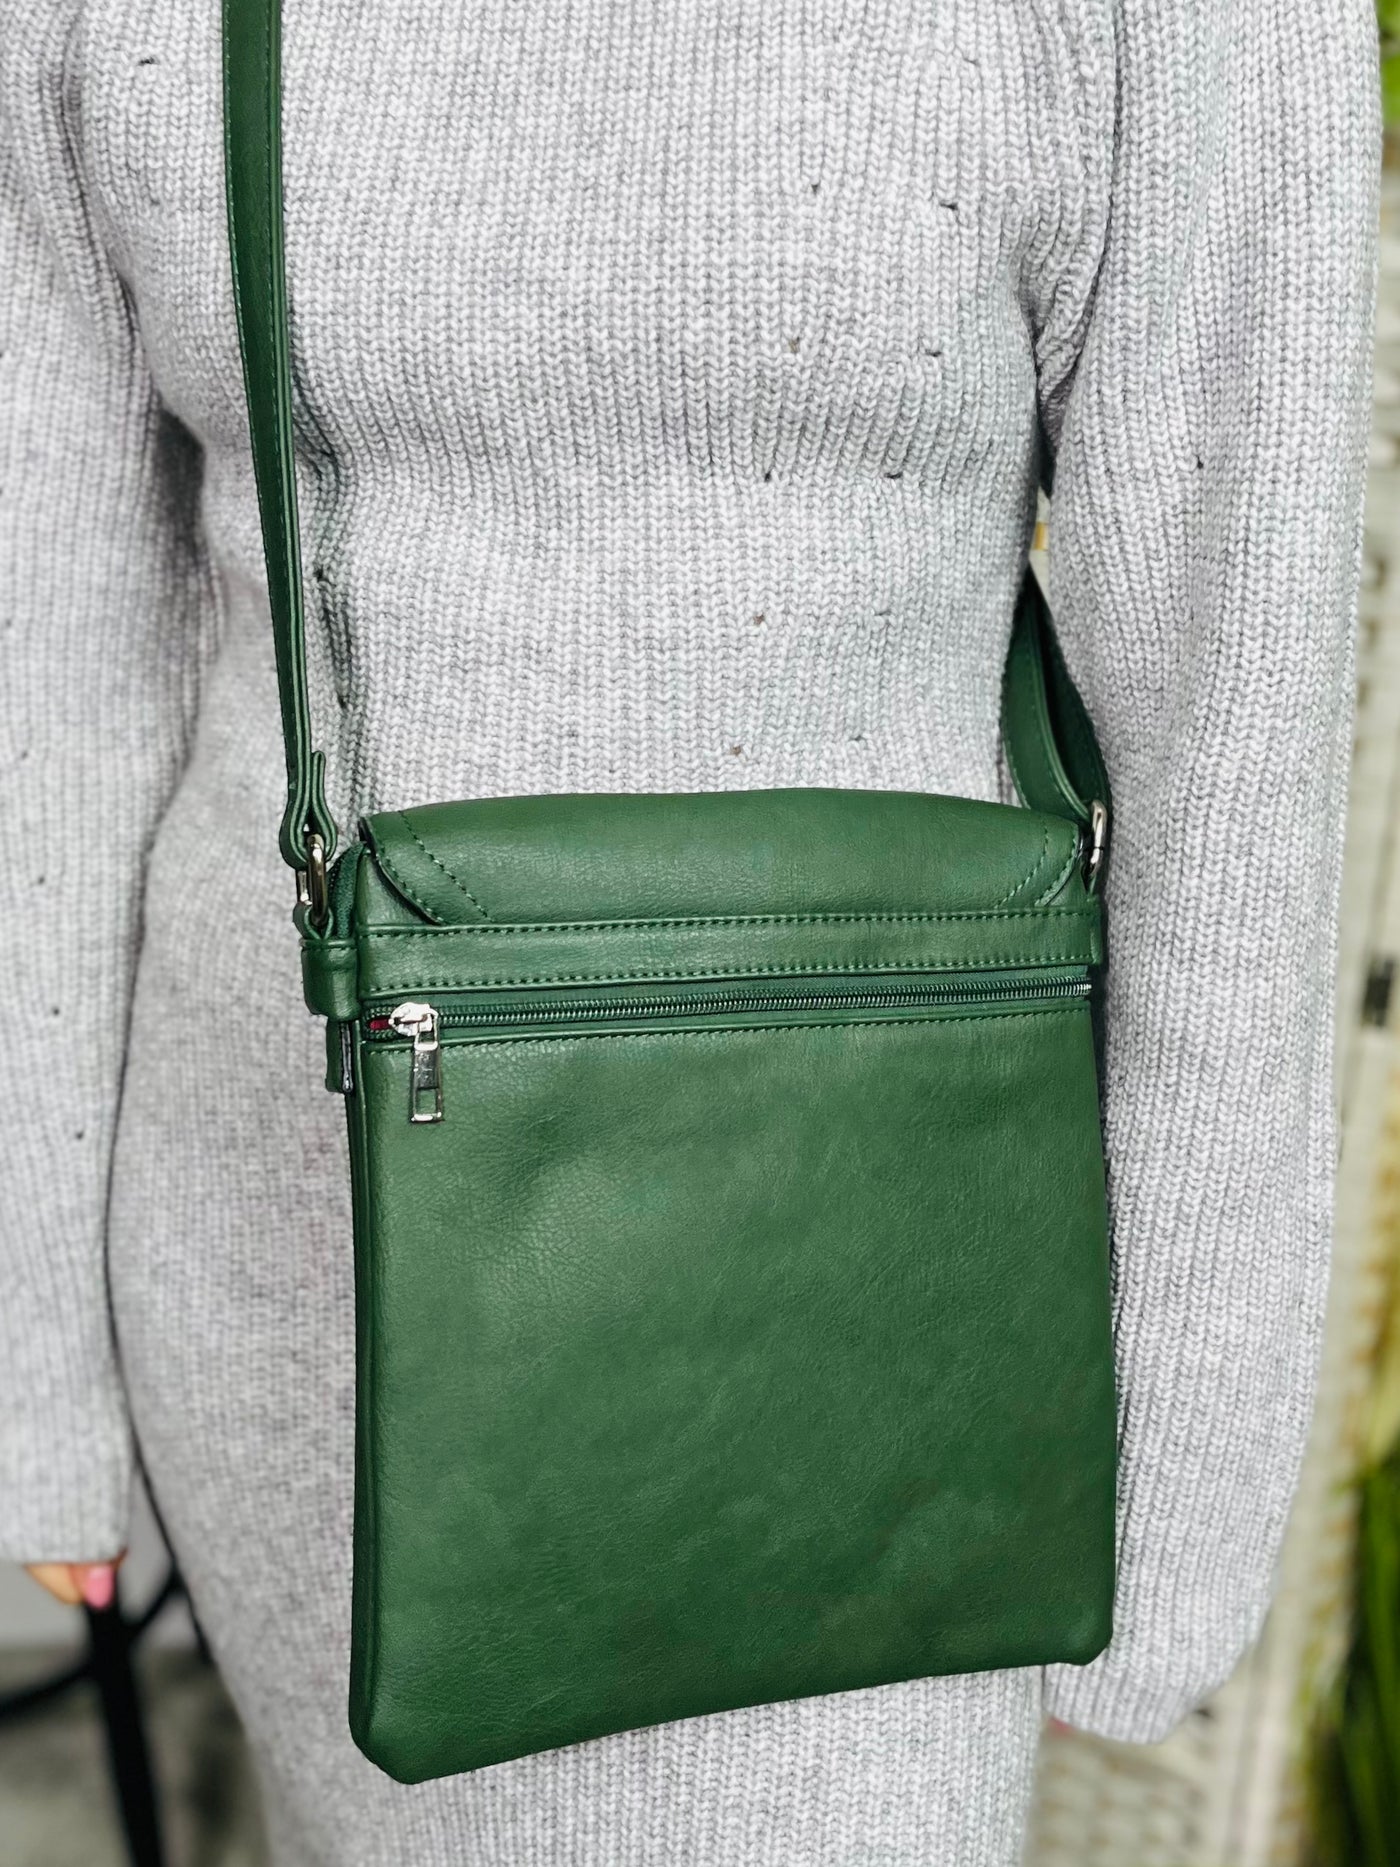 Crossbody Handbag-Green